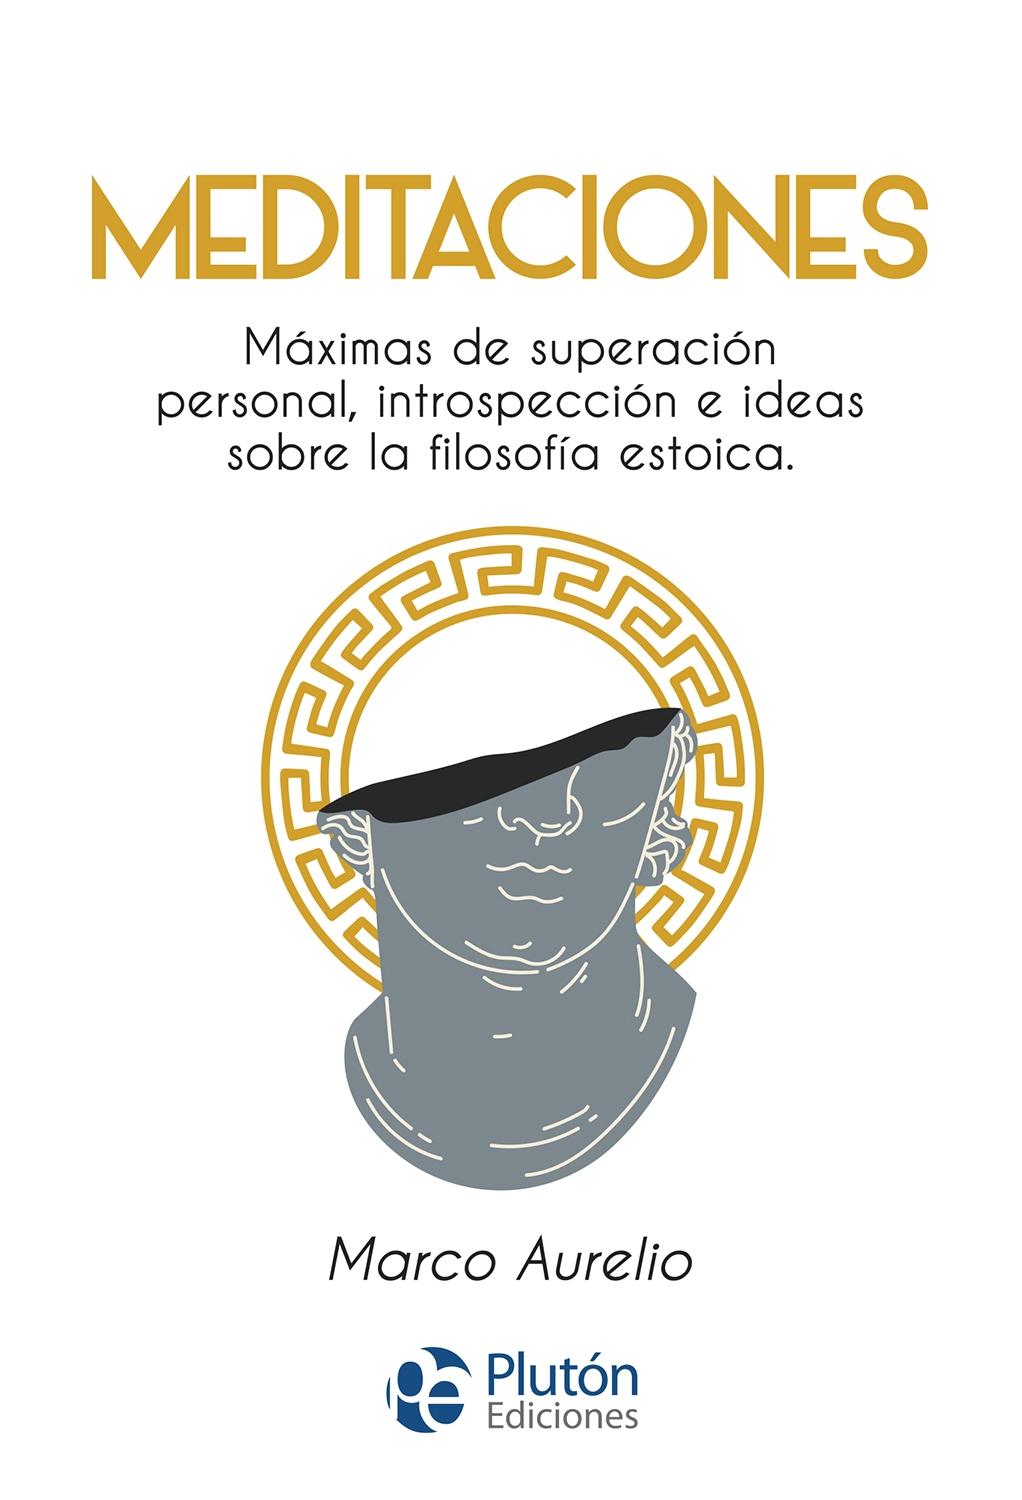 MEDITACIONES "MAXIMAS DE SUPERACION PERSONAL,INTROSPECCIÓN E IDEAS SOBRE LA FILOSOFIA ESTOICA"